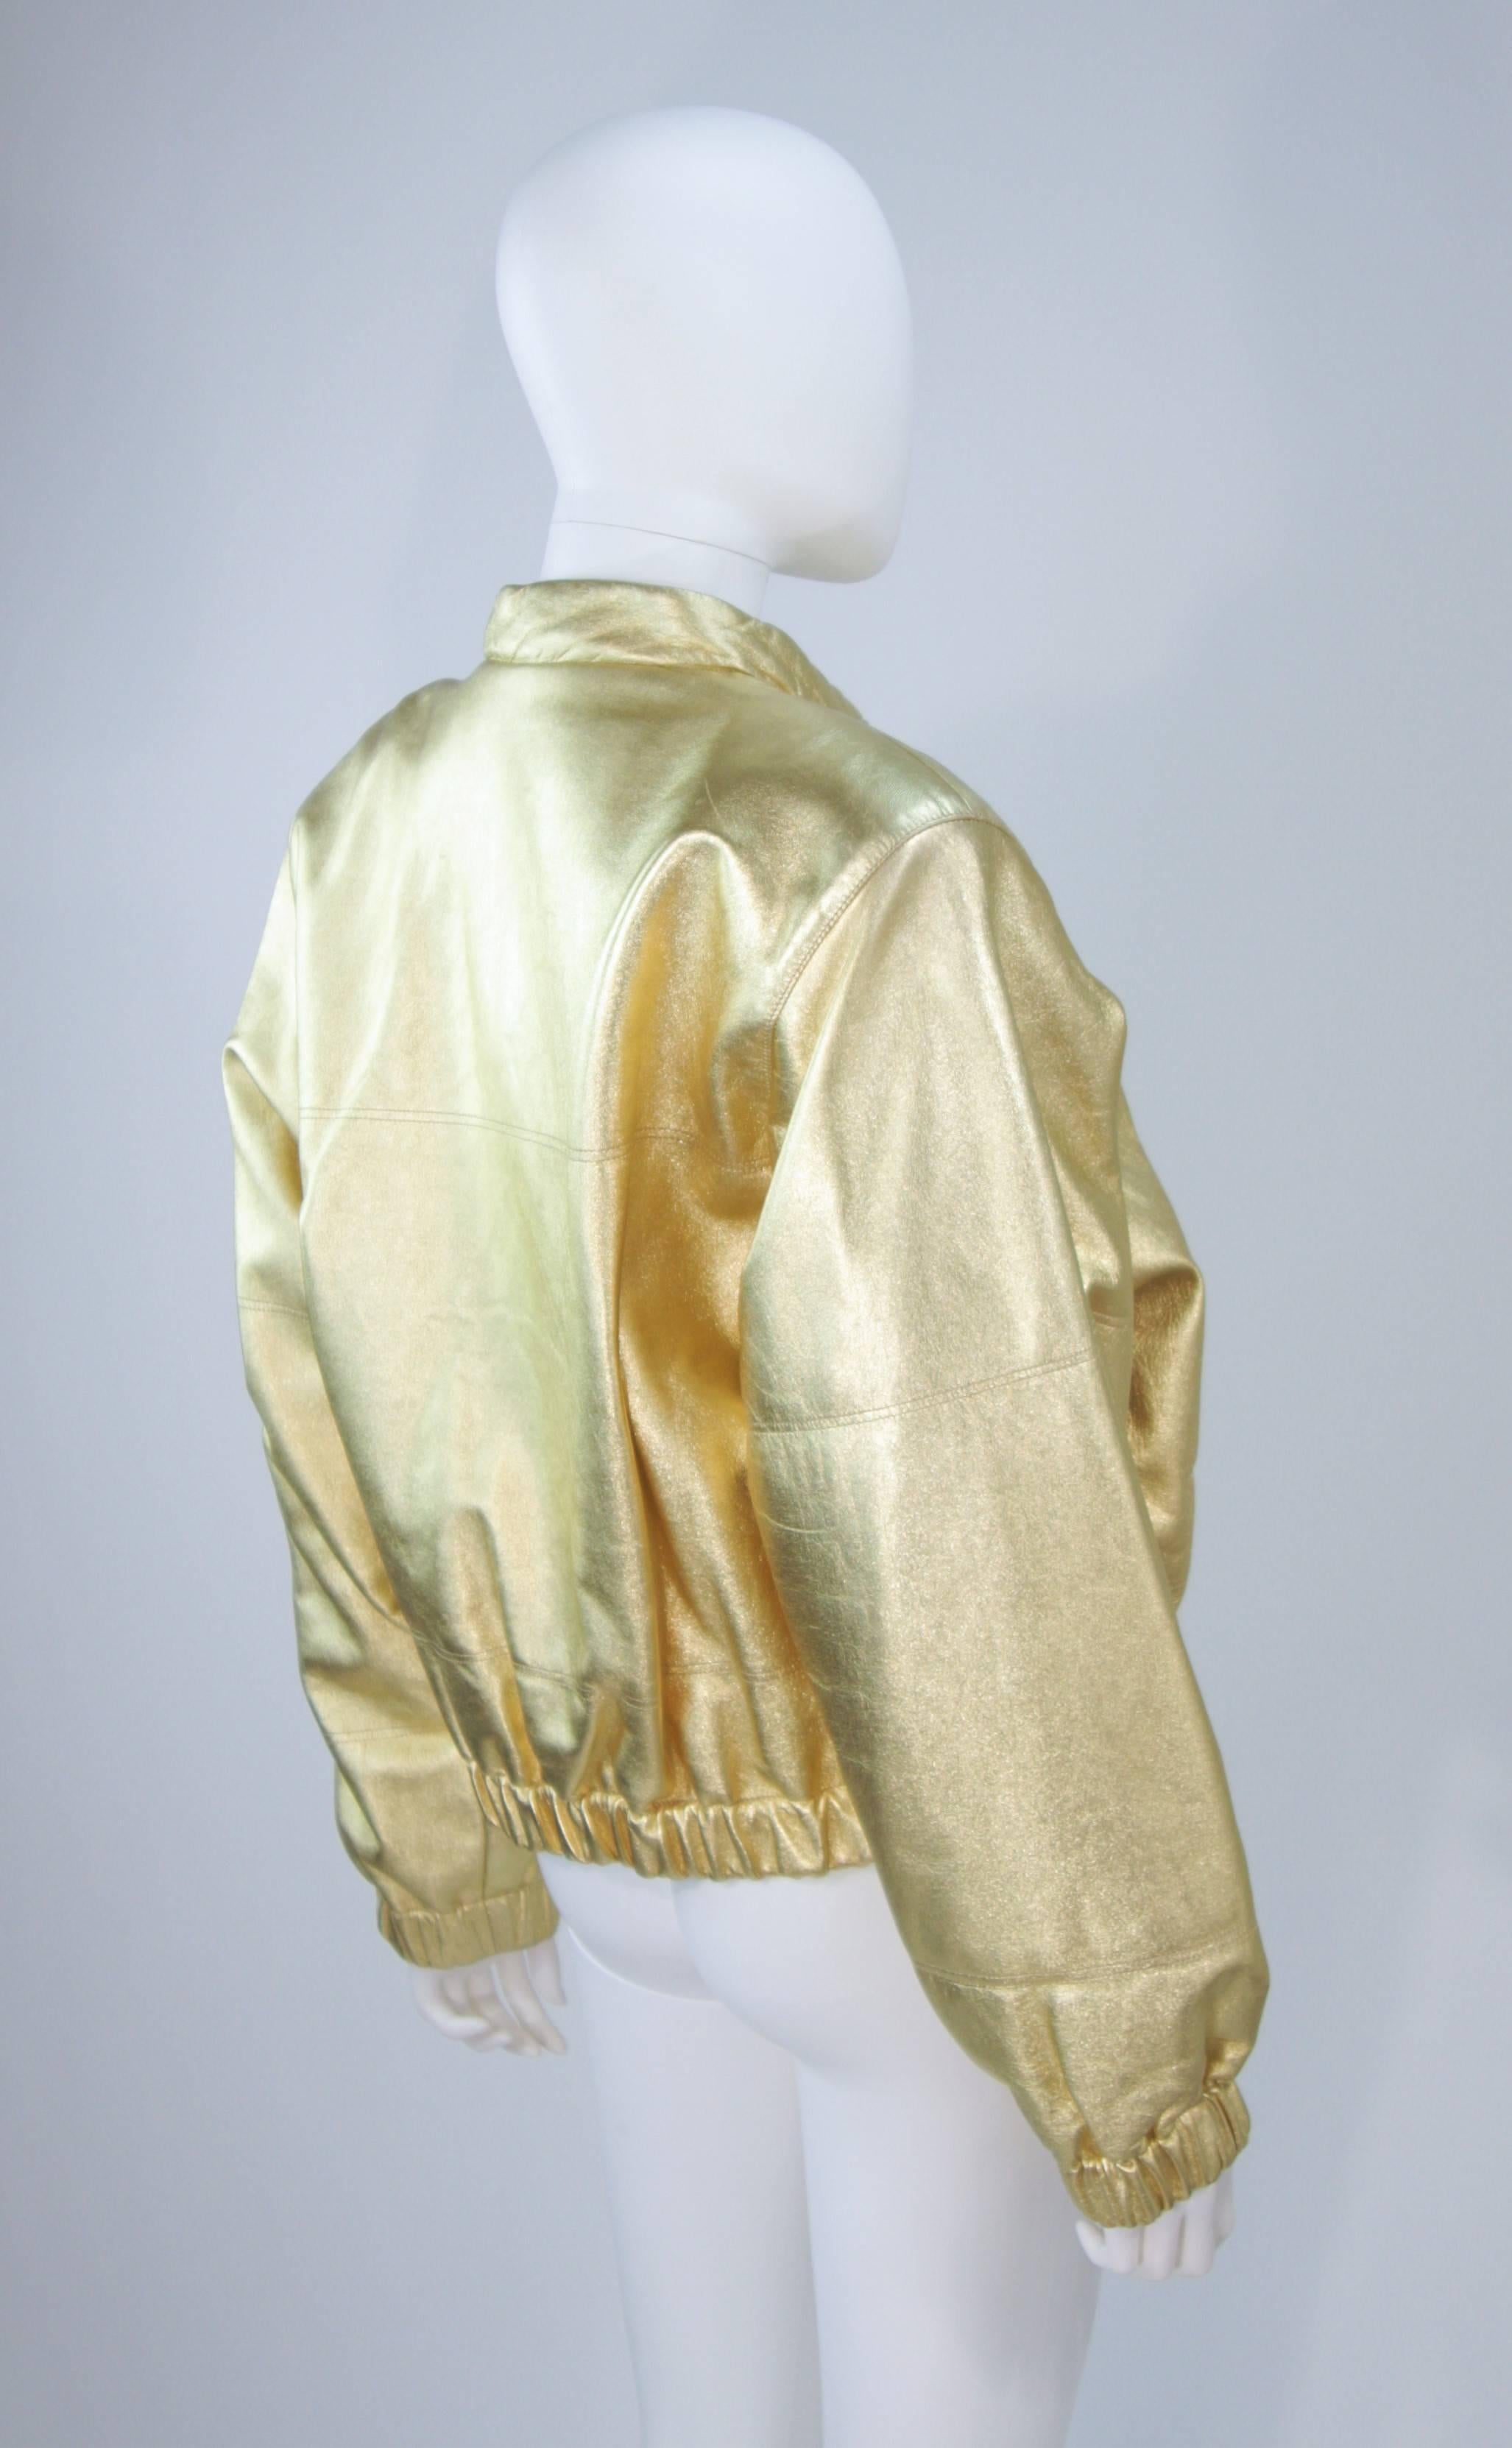 YVES SAINT LAURENT Gold Metallic Leather Bomber Style Jacket Size 6 2